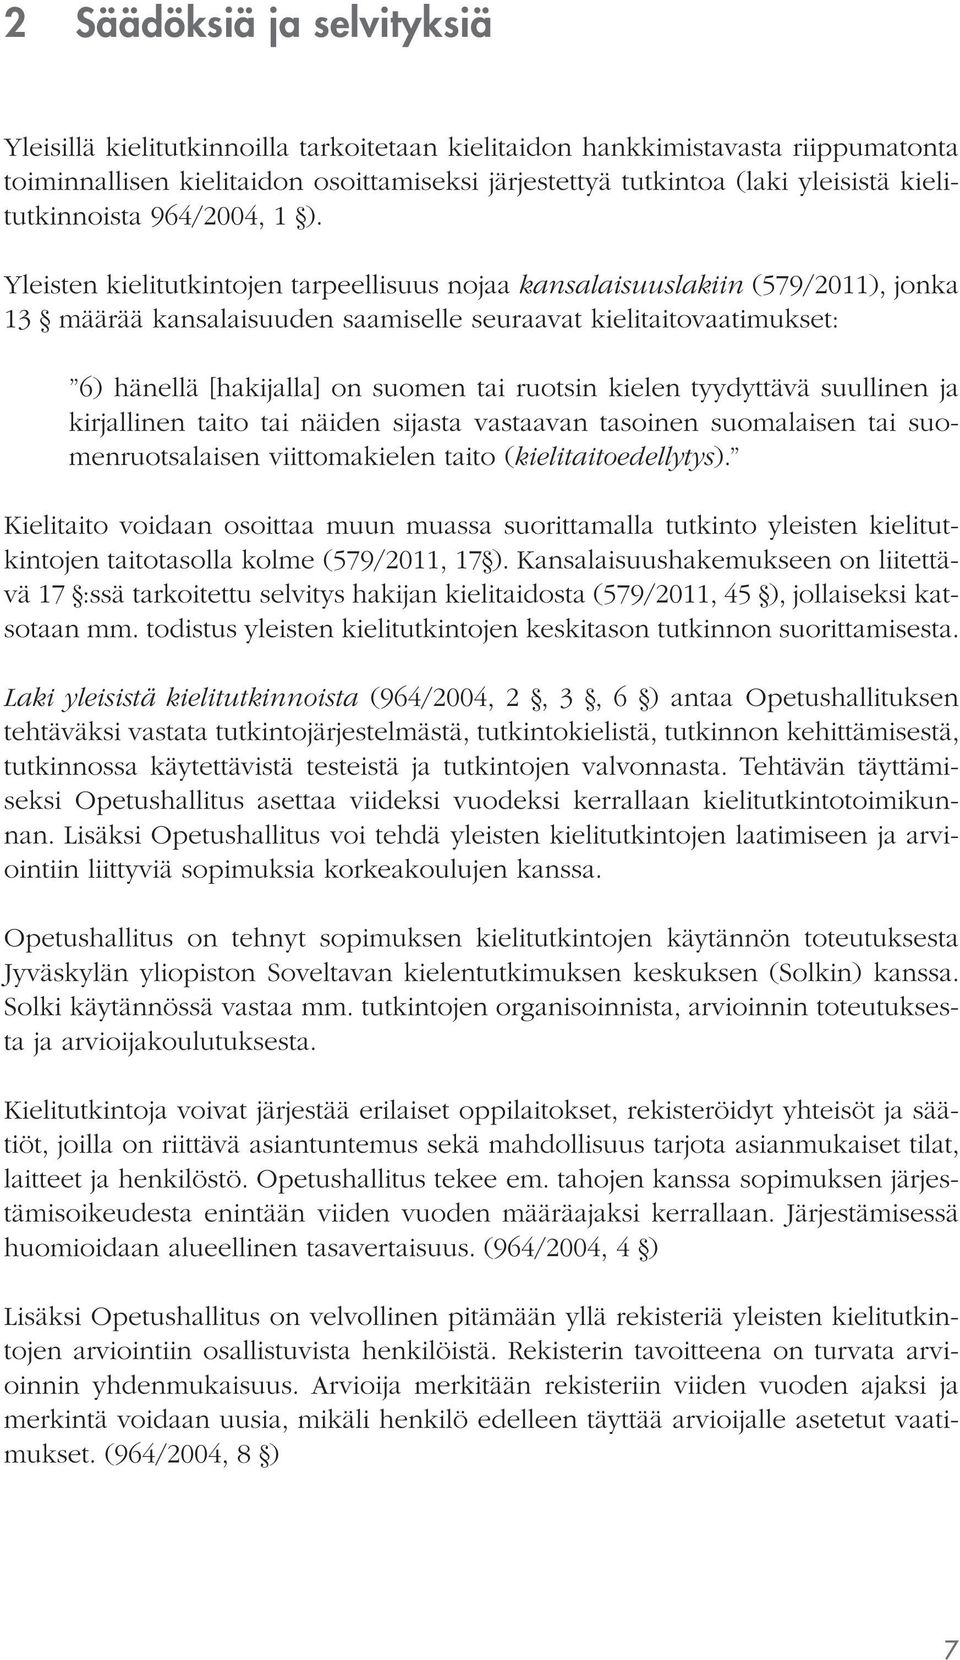 Yleisten kielitutkintojen tarpeellisuus nojaa kansalaisuuslakiin (579/2011), jonka 13 määrää kansalaisuuden saamiselle seuraavat kielitaitovaatimukset: 6) hänellä [hakijalla] on suomen tai ruotsin